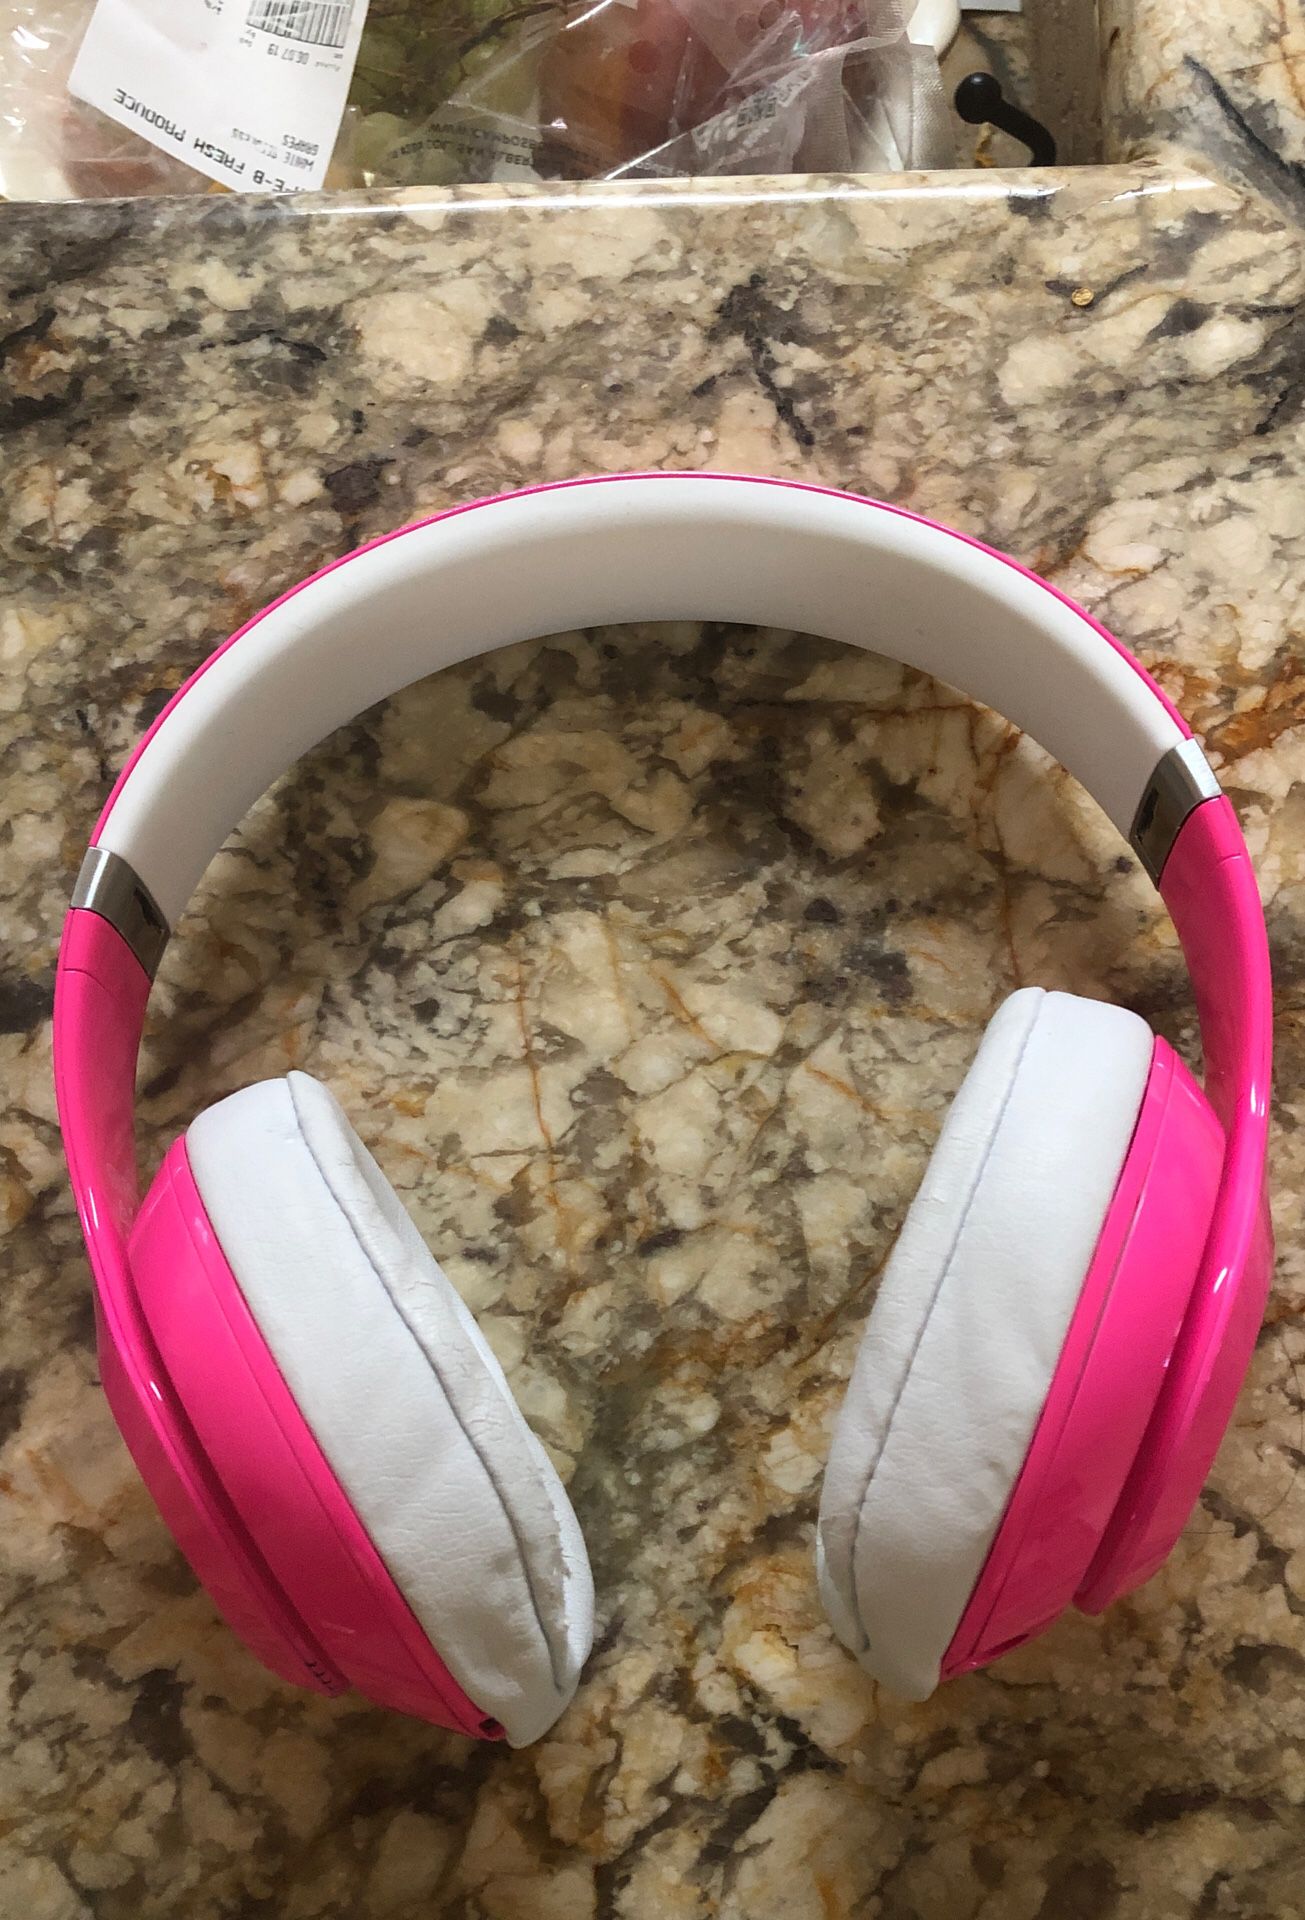 Hot pink studio beats headphones